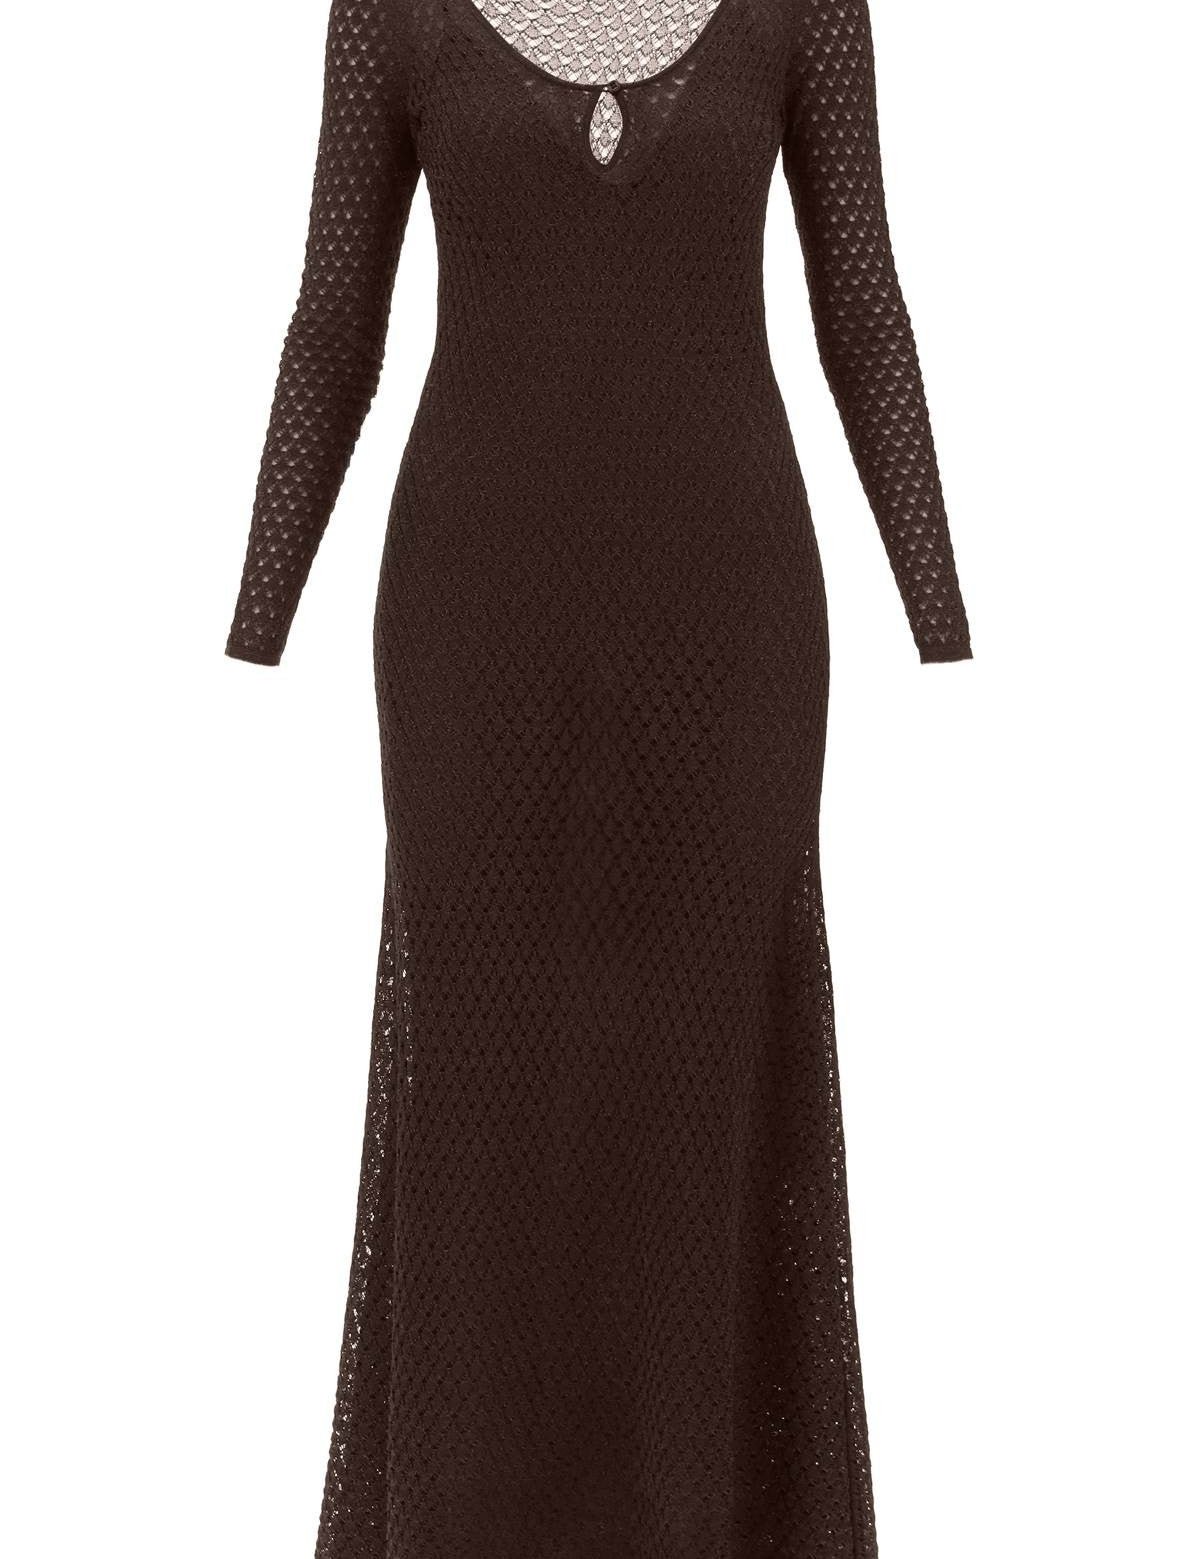 tom-ford-maxi-lurex-knit-perforated-dress.jpg